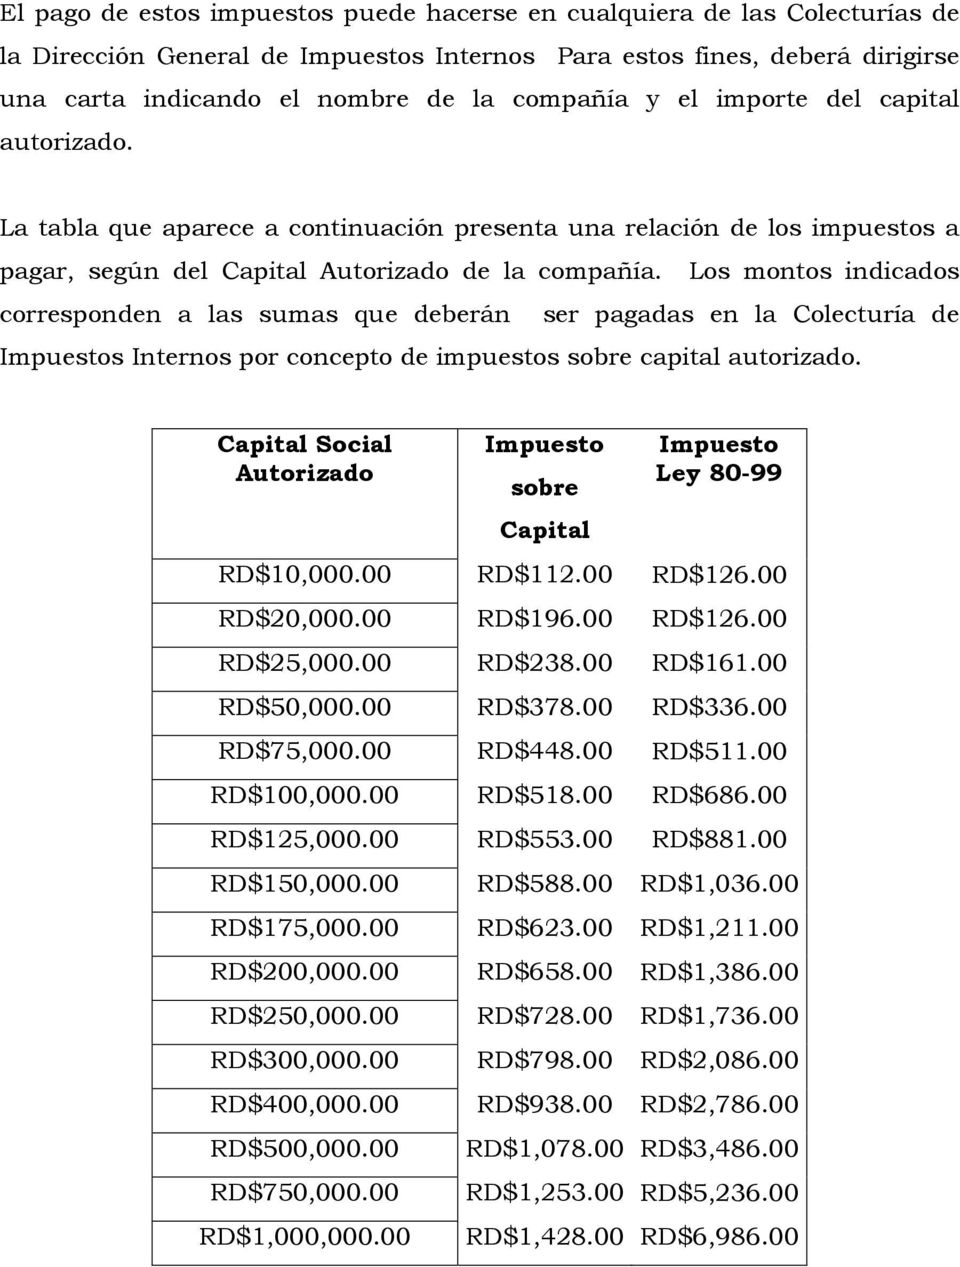 Los montos indicados corresponden a las sumas que deberán ser pagadas en la Colecturía de Impuestos Internos por concepto de impuestos sobre capital autorizado.